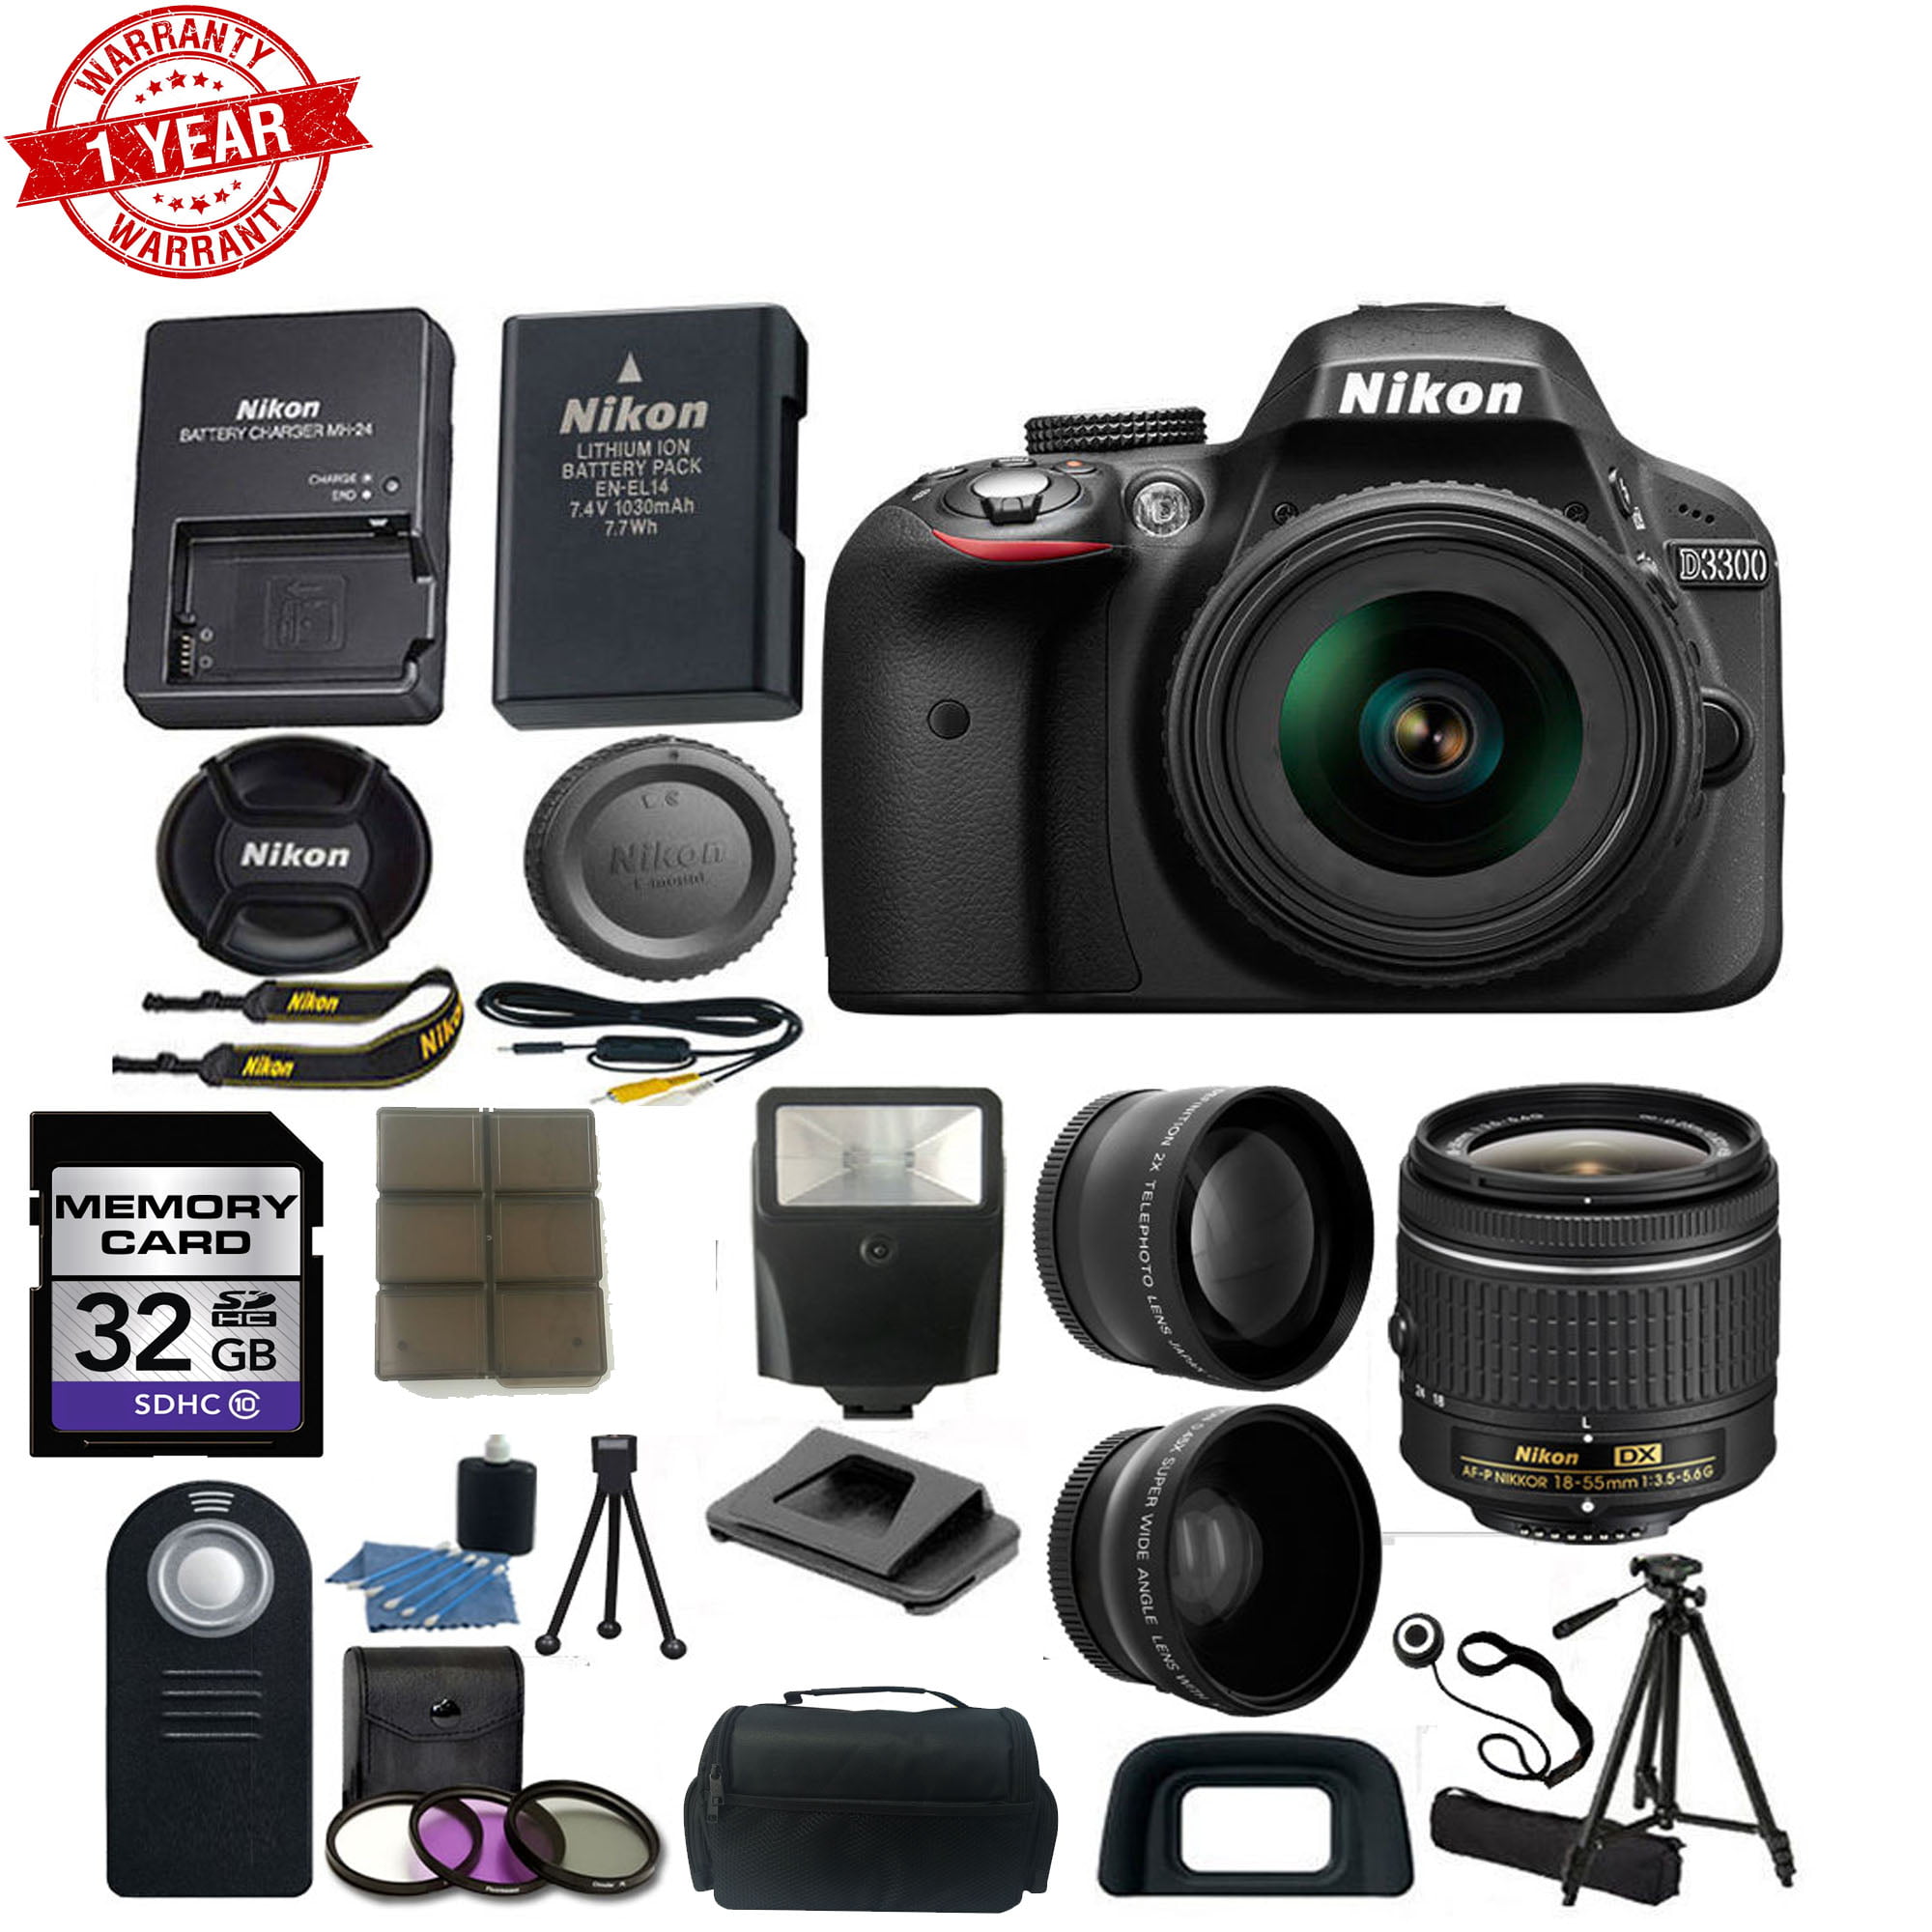 Nikon D3300 Digital SLR Camera w/18-55mm AF-P DX Lens|Wide